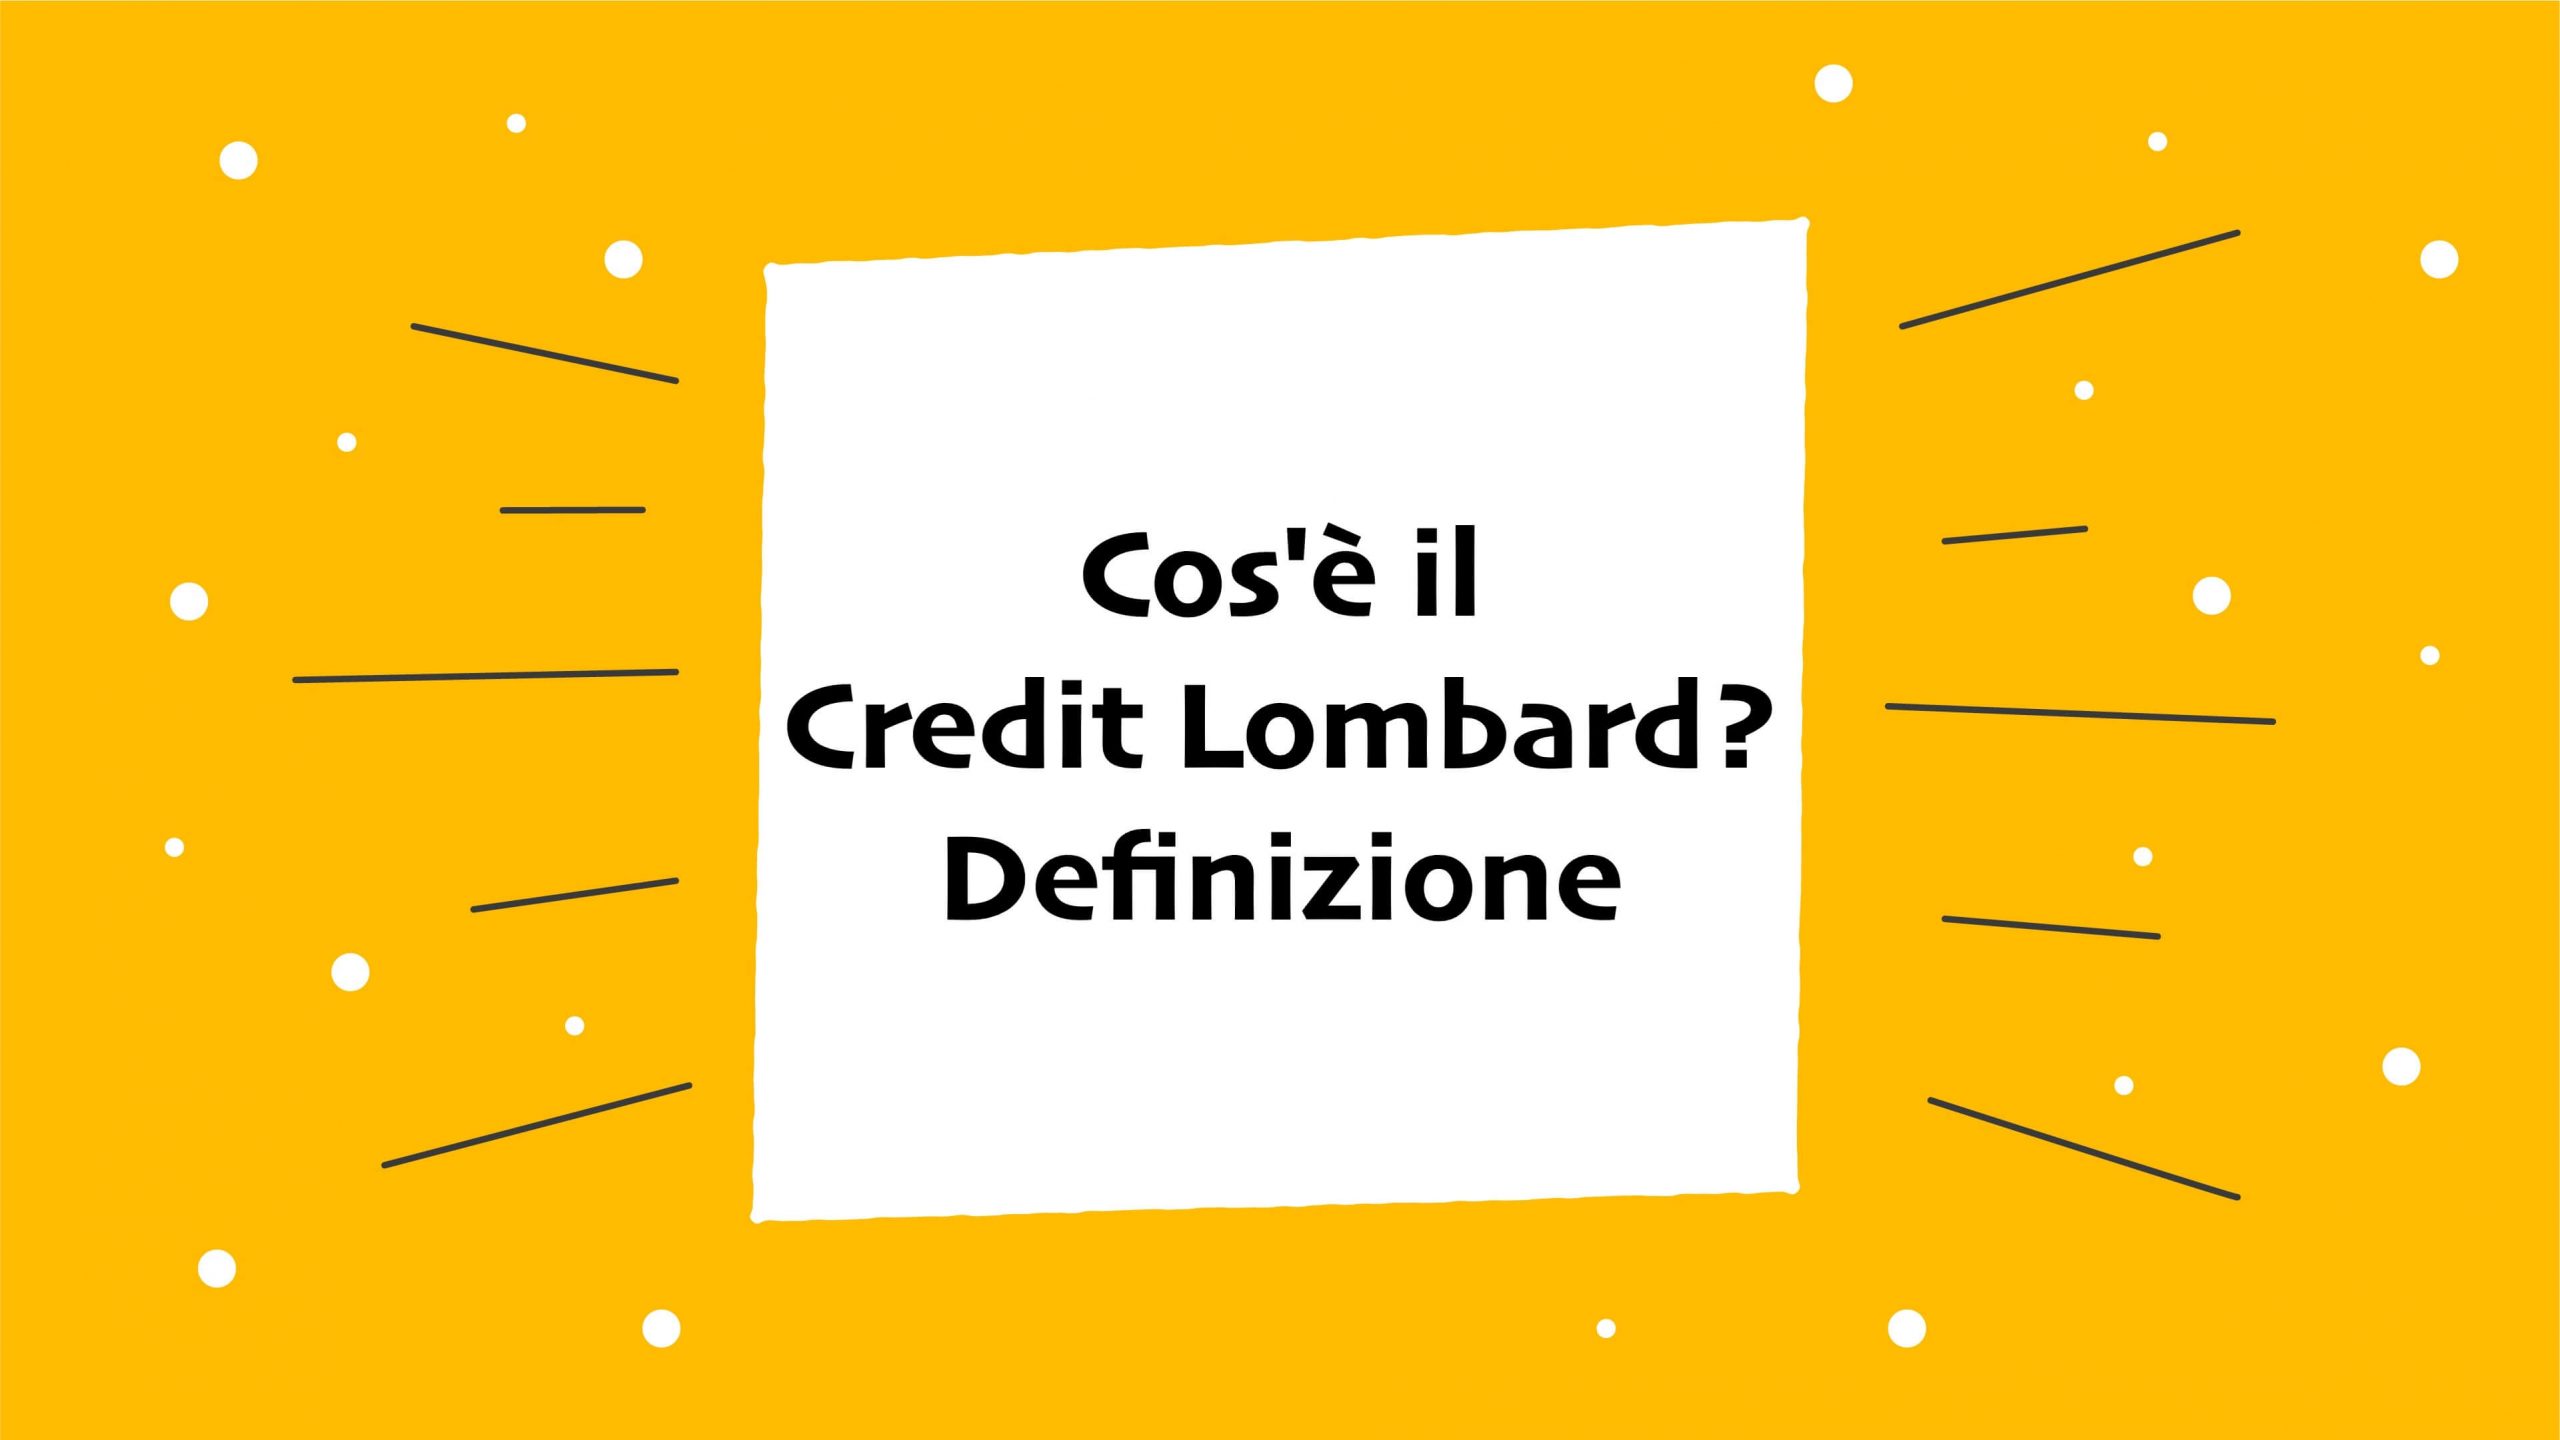 Cos'è il Credit Lombard?